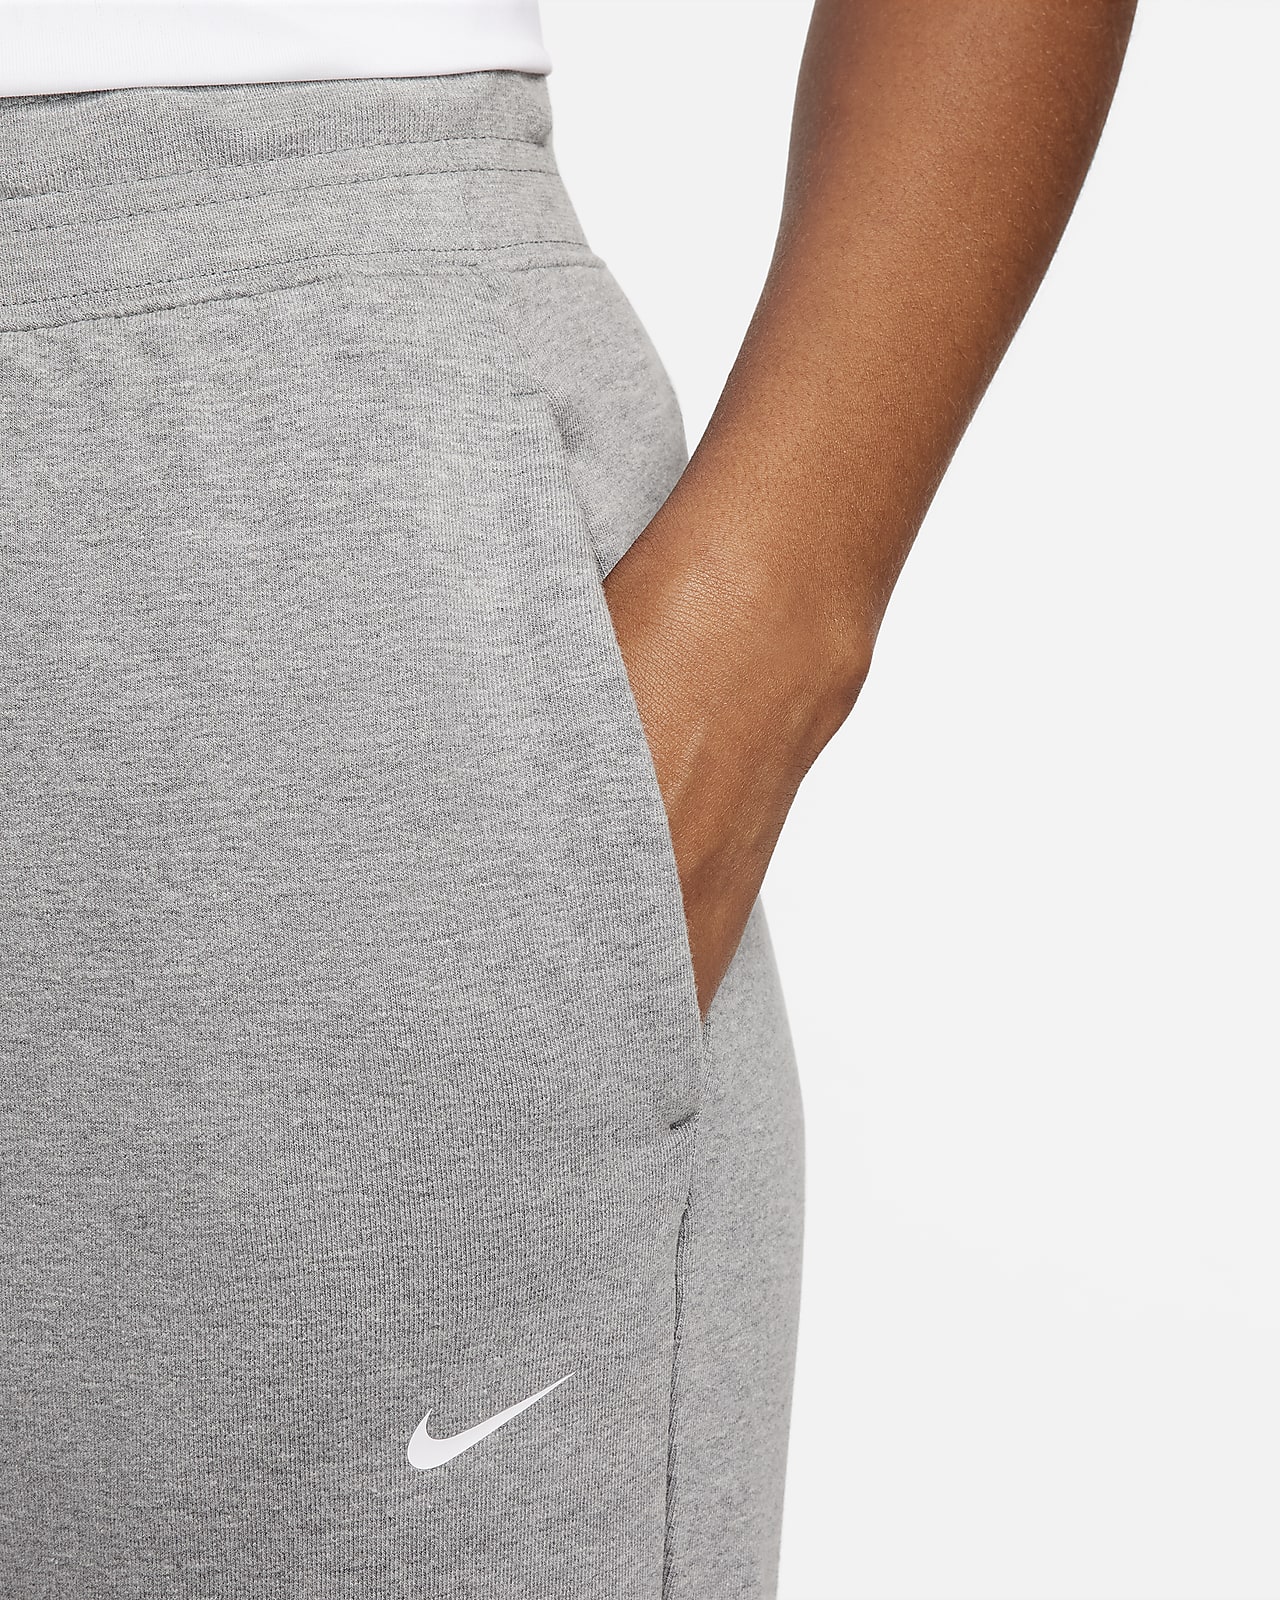 Nike - Jogger - Gris foncé neutre